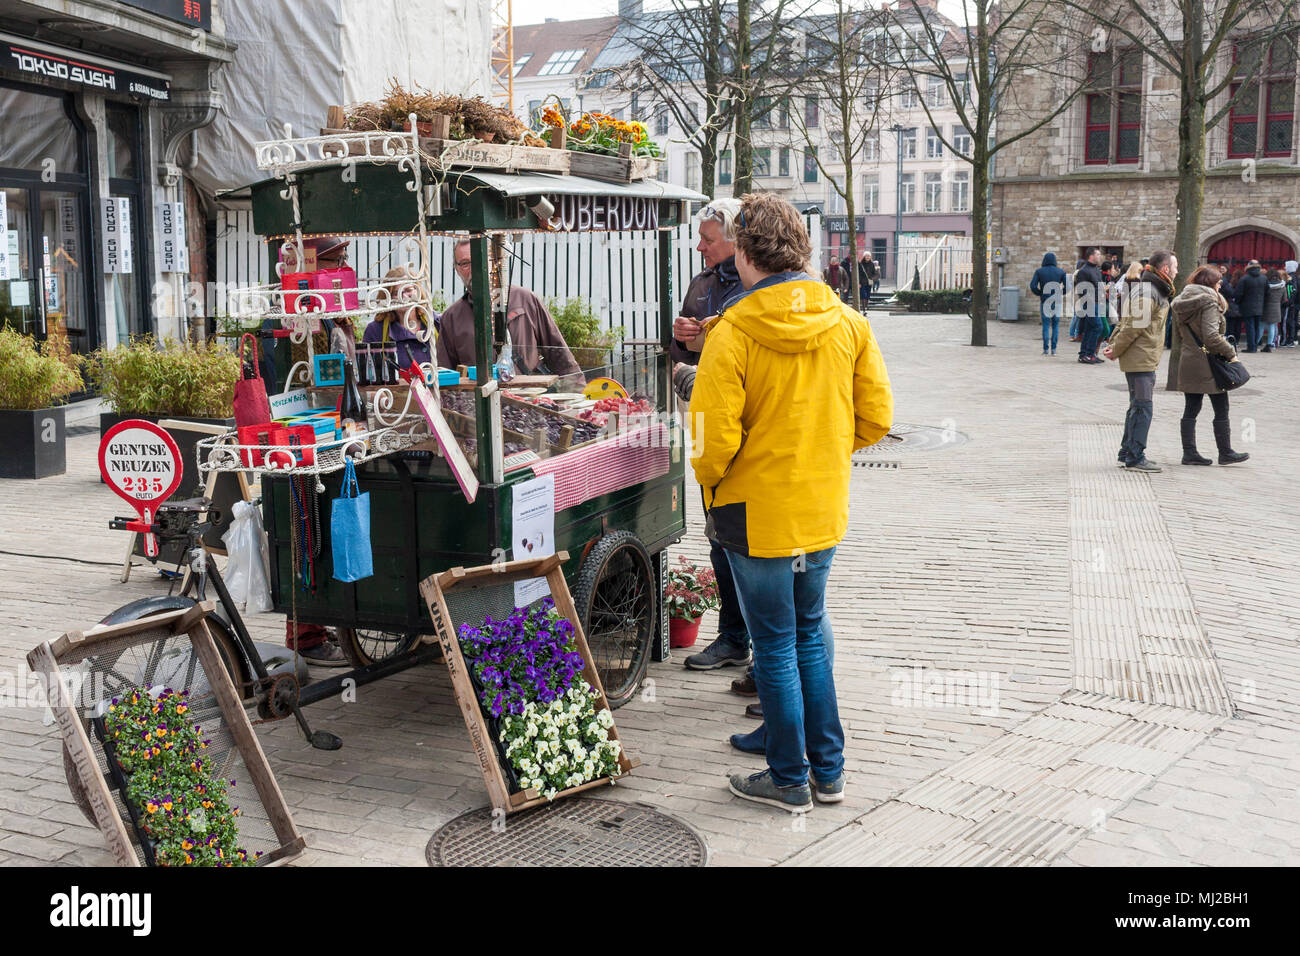 Un piccolo box che vendono fiori e cuberdon (un tipo di dolce belga) a Gand, Belgio Foto Stock